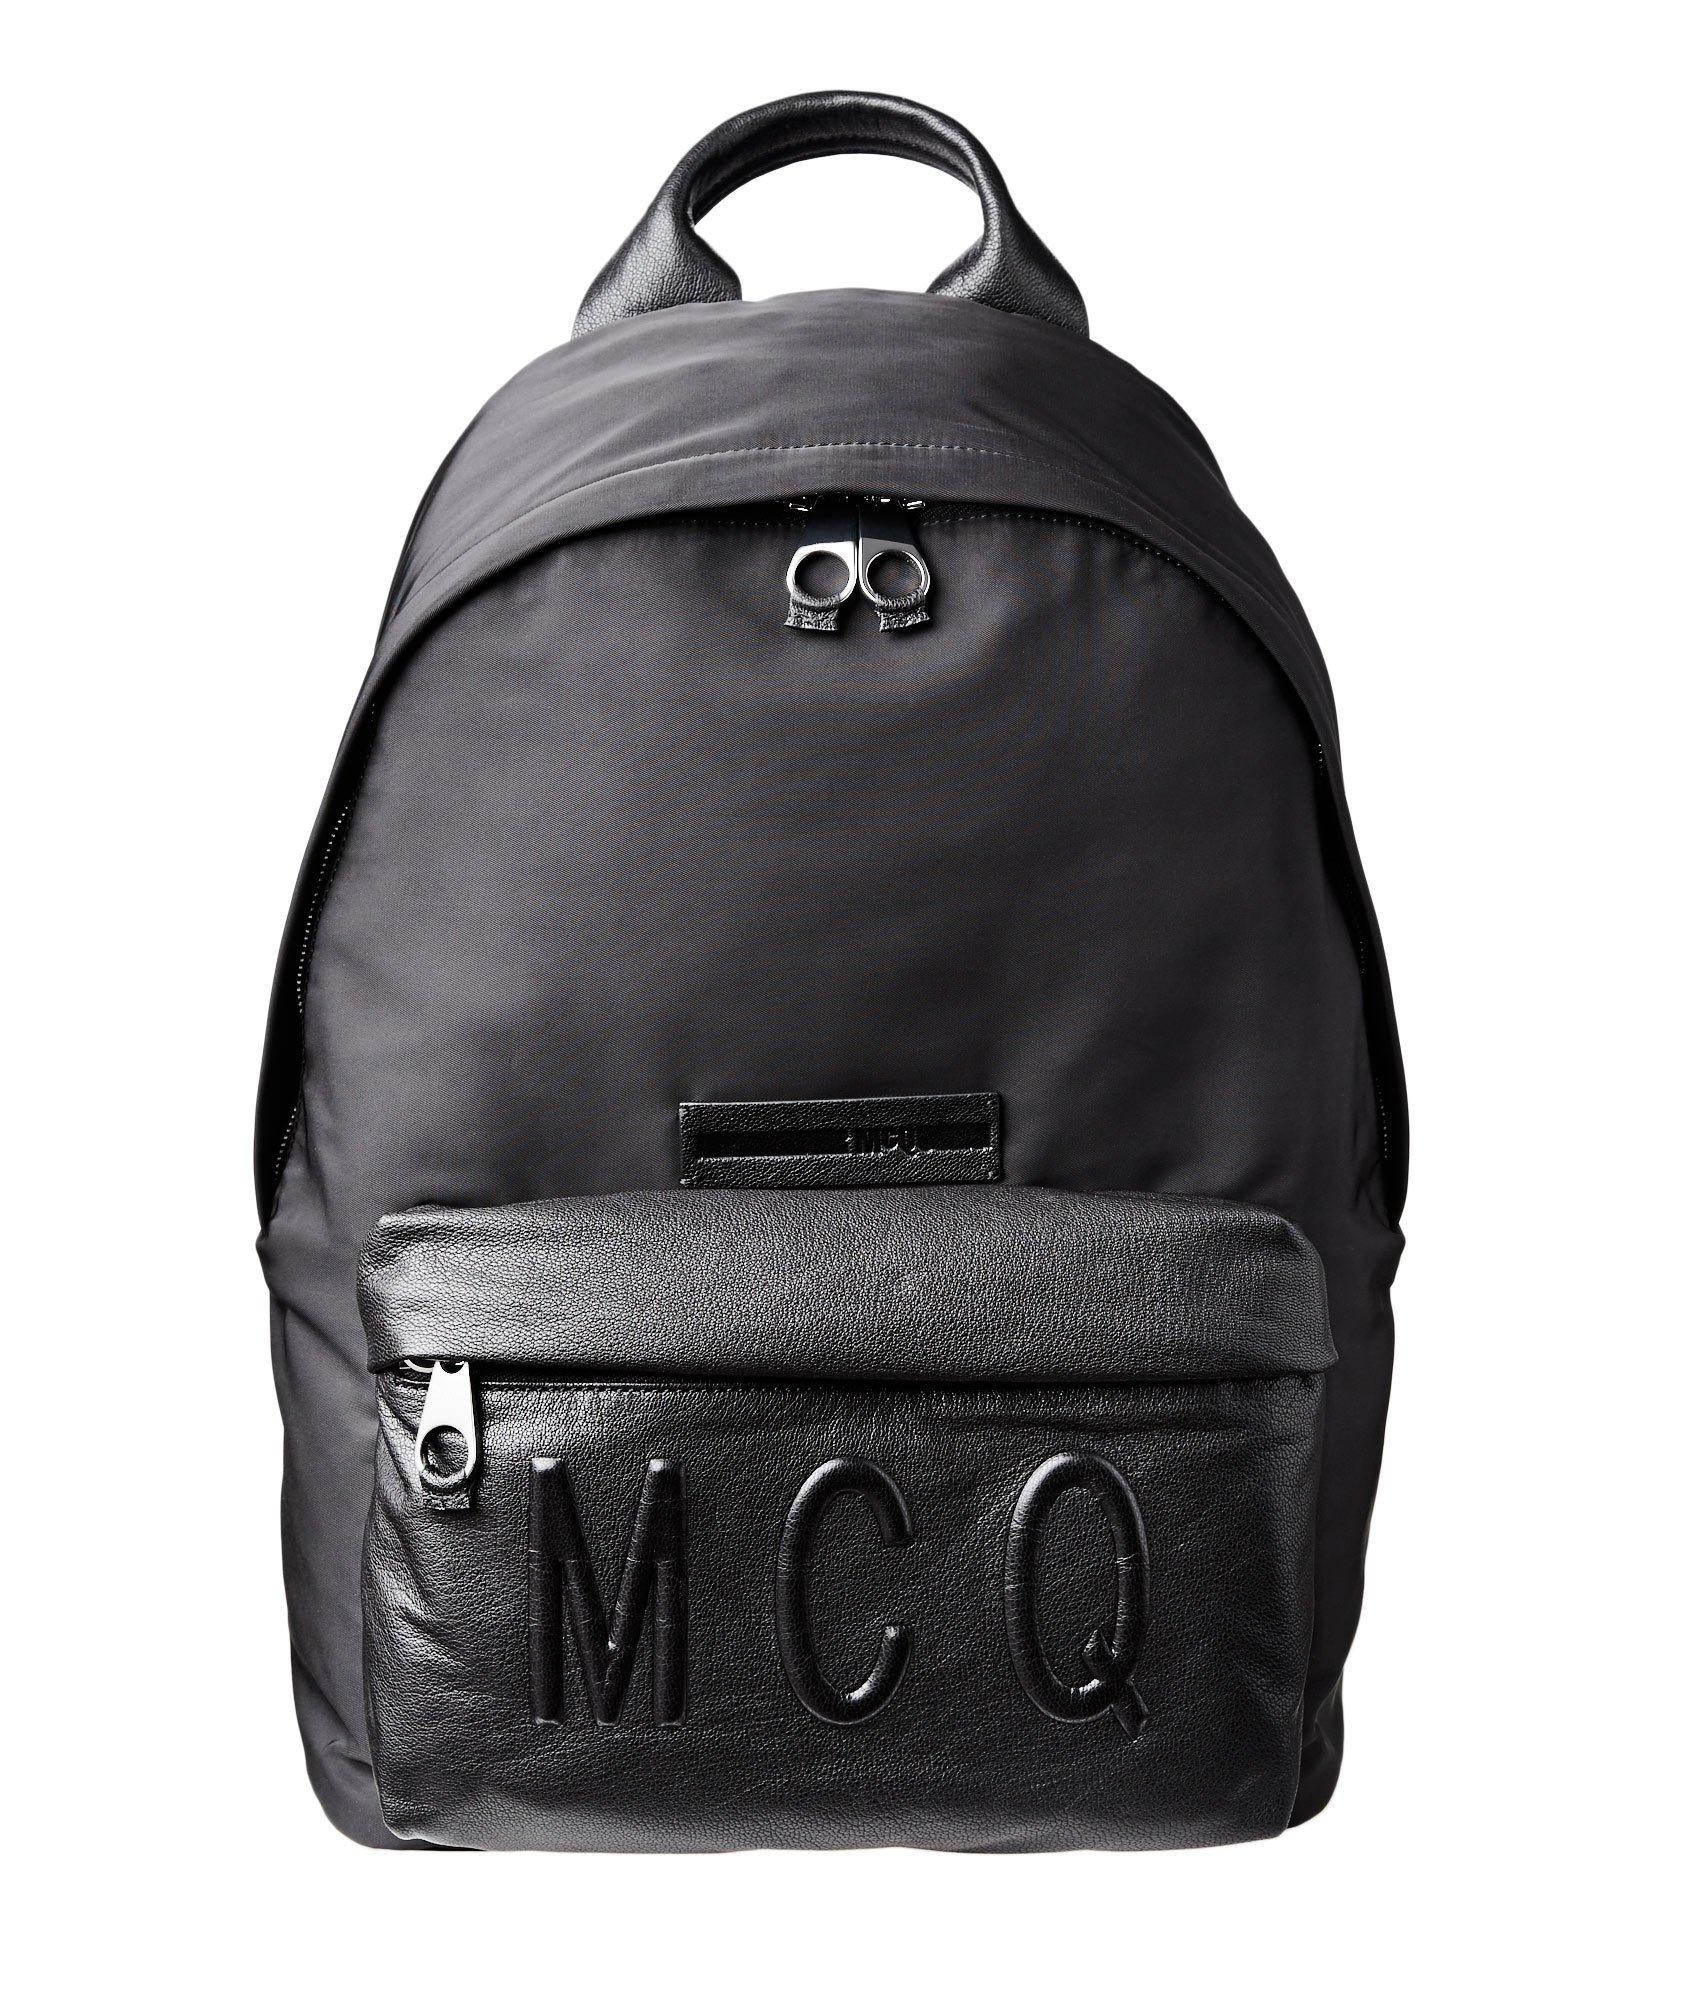 Leather & Nylon Backpack image 0